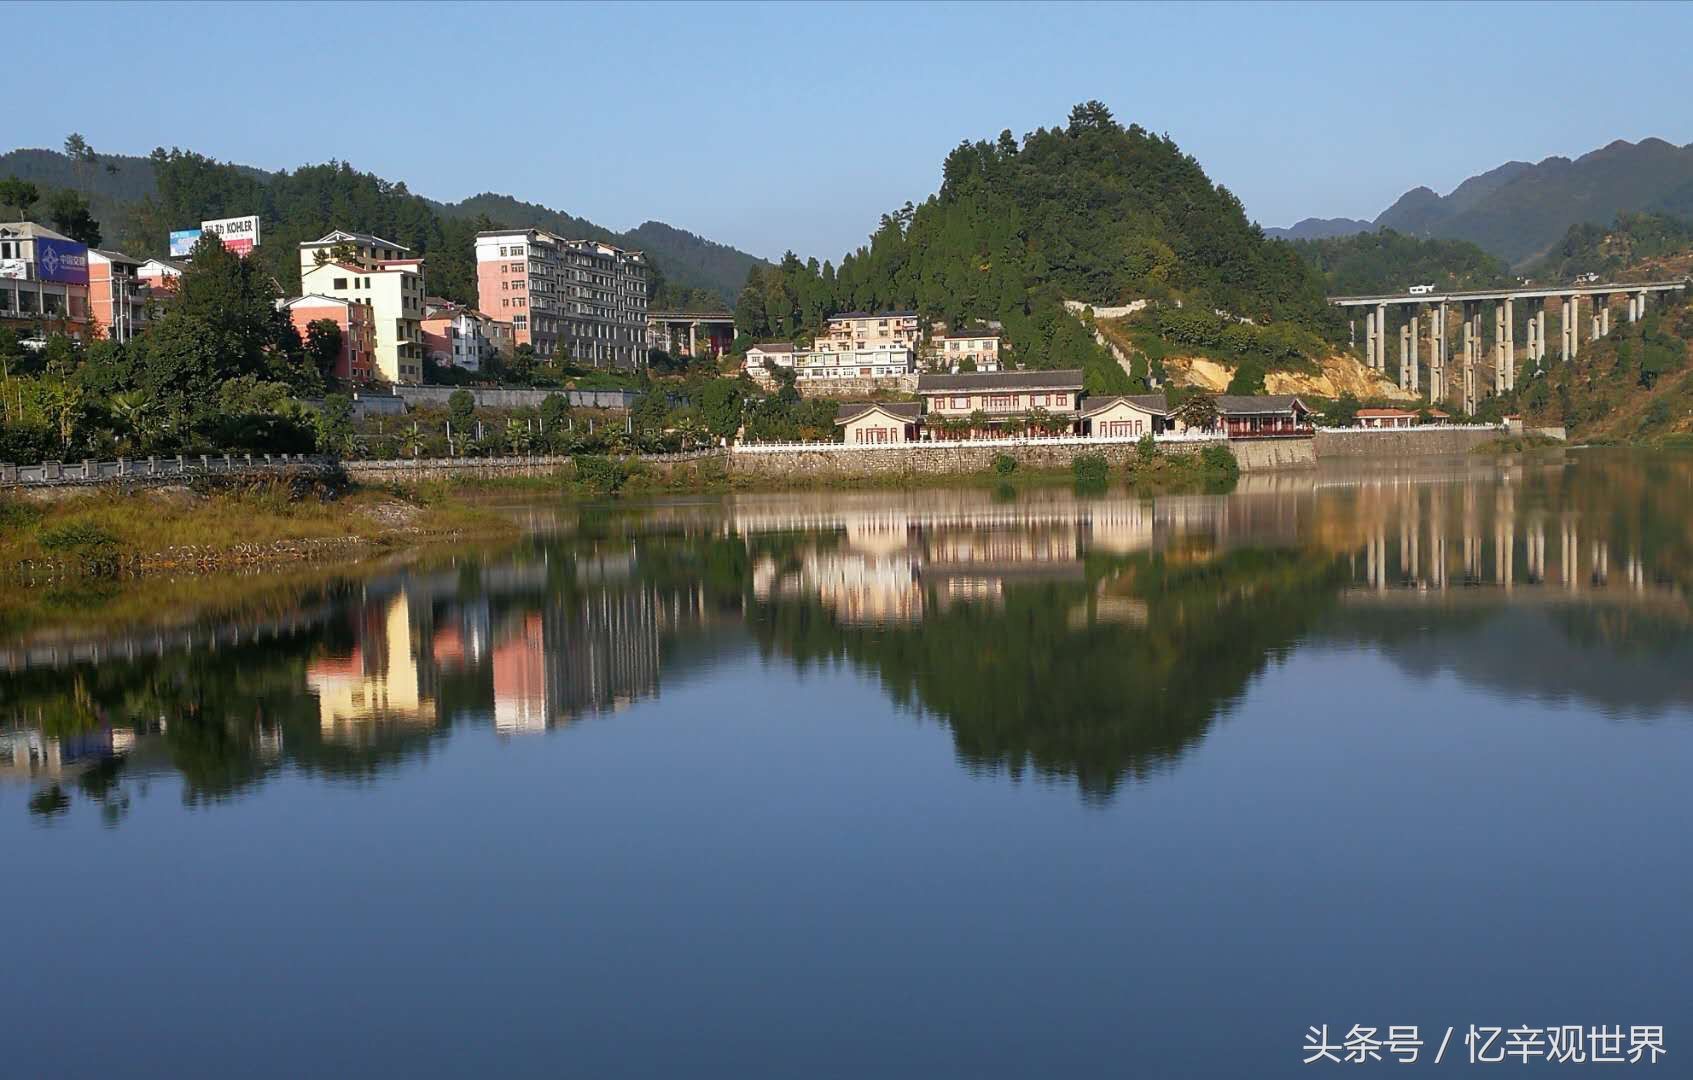 贵州仁怀这个小村庄依山傍水风景优美,很多城